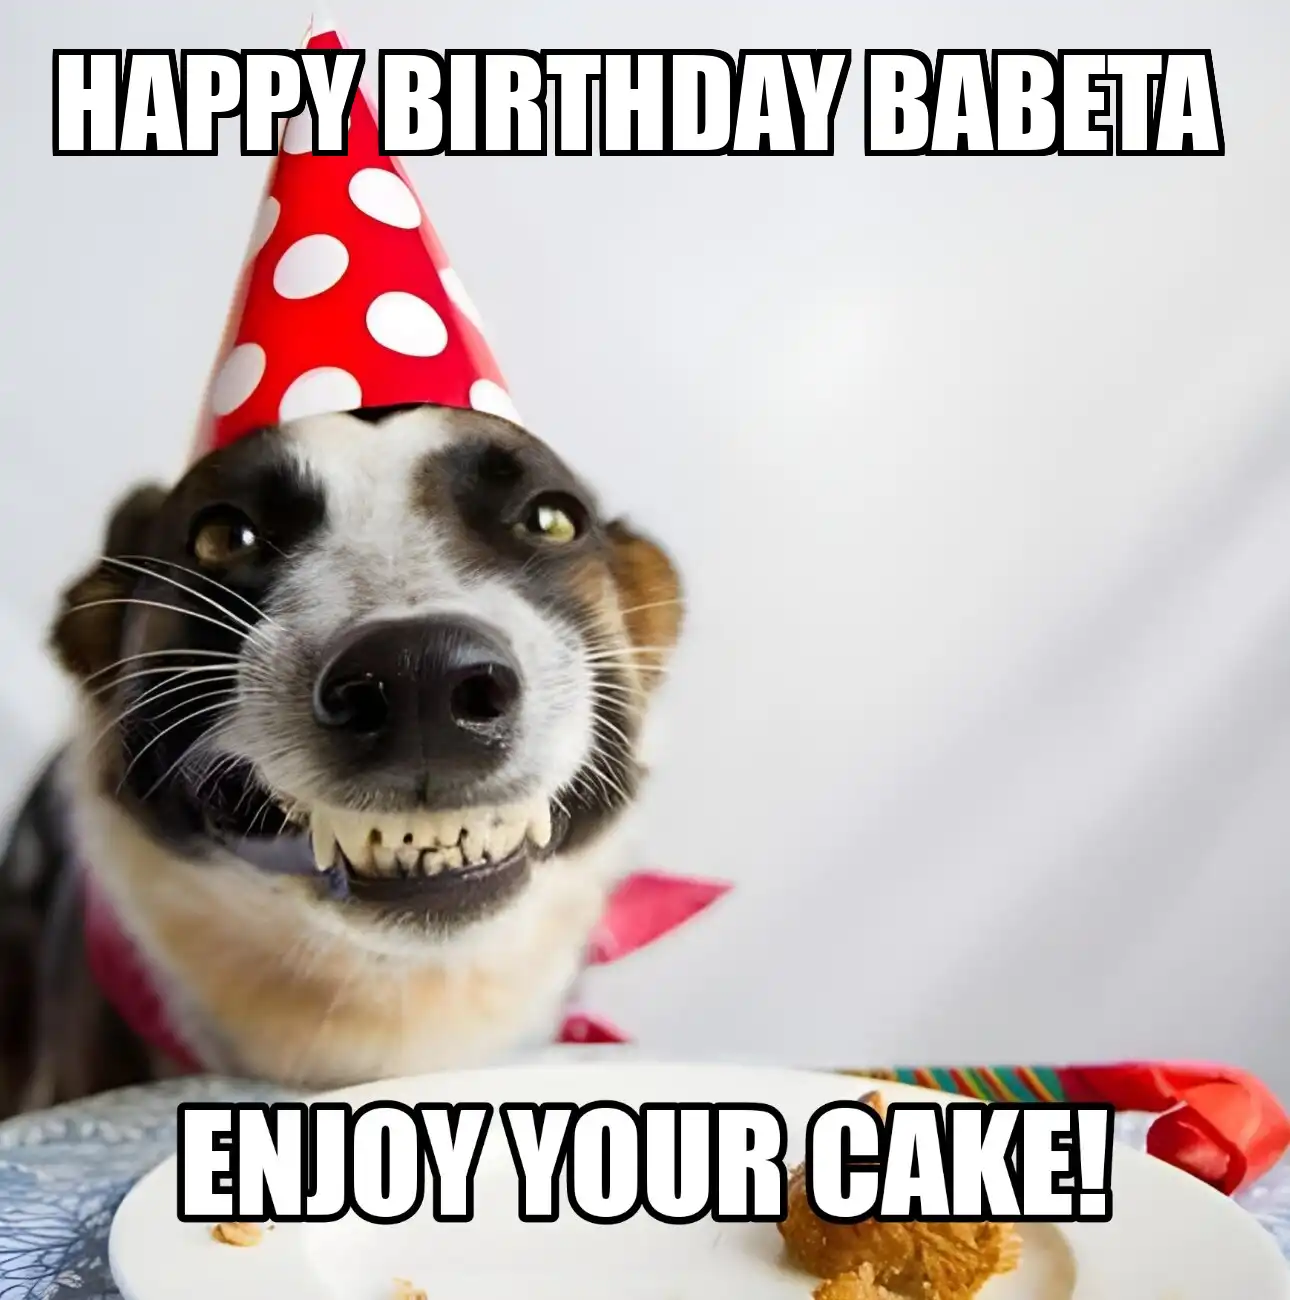 Happy Birthday Babeta Enjoy Your Cake Dog Meme